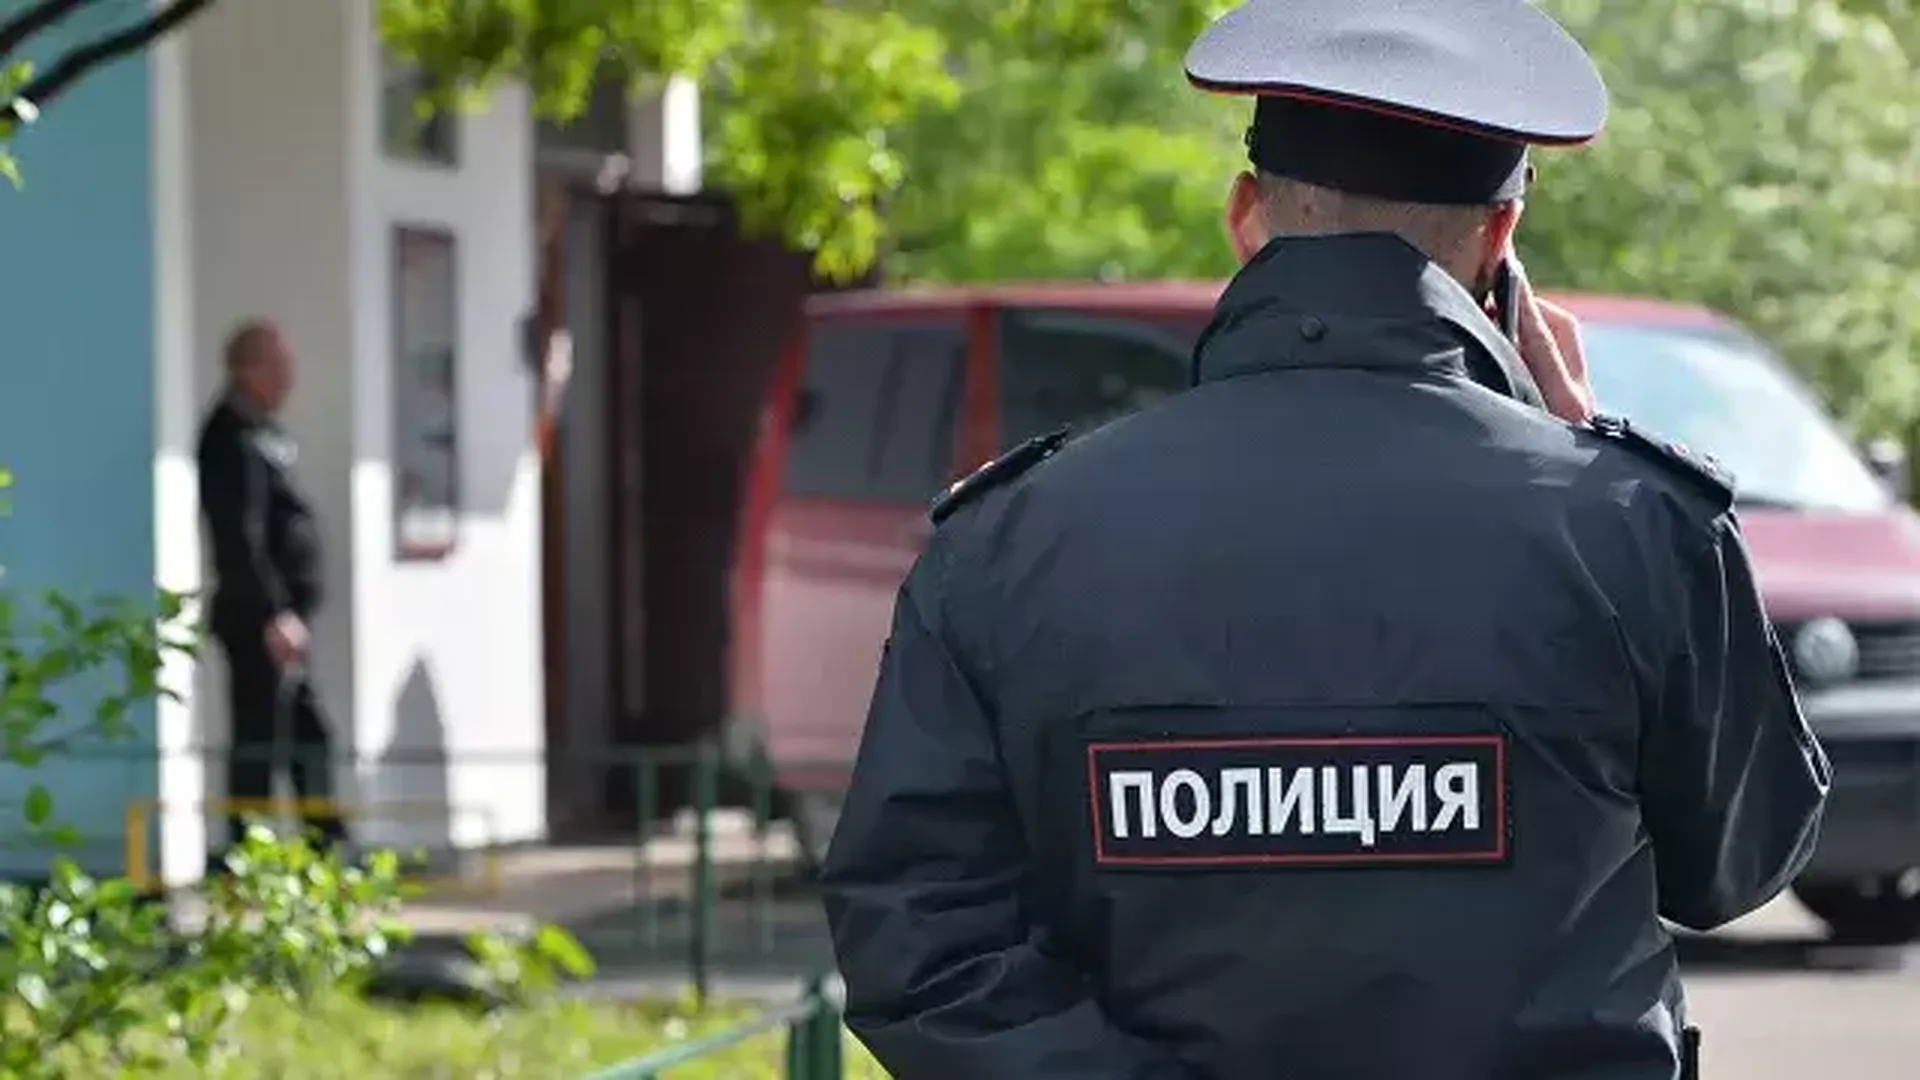 СМИ: приятели случайно застреленного полицейским из Мошкова стали фигурантами уголовного дела